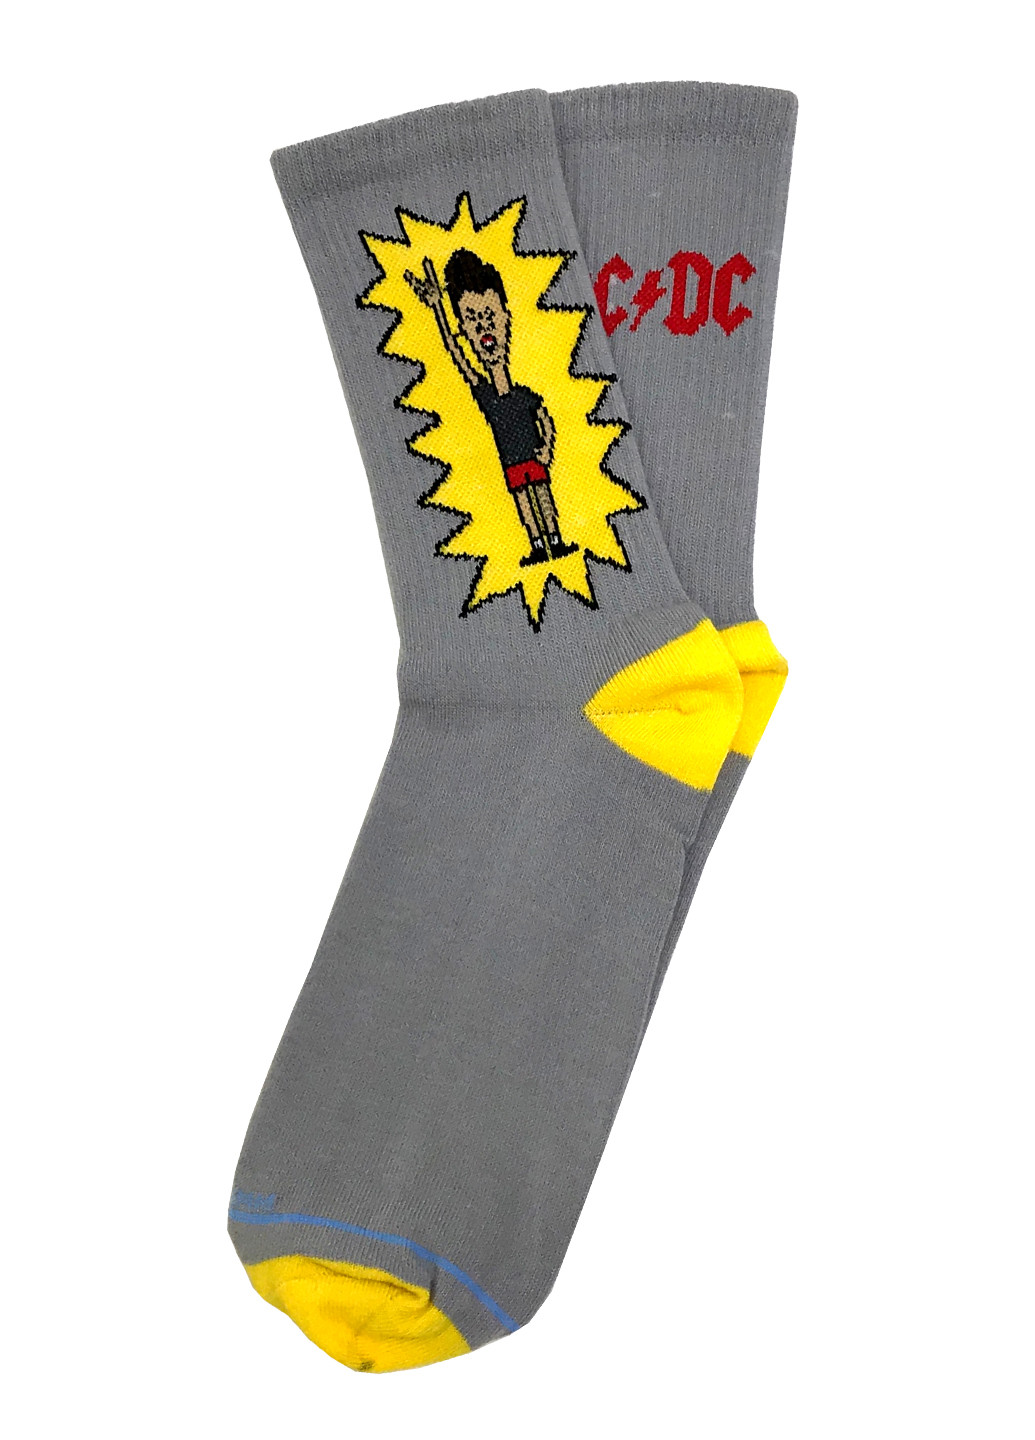 Мужские носки Premium AC/DC Butt-head серые LOMM серые повседневные